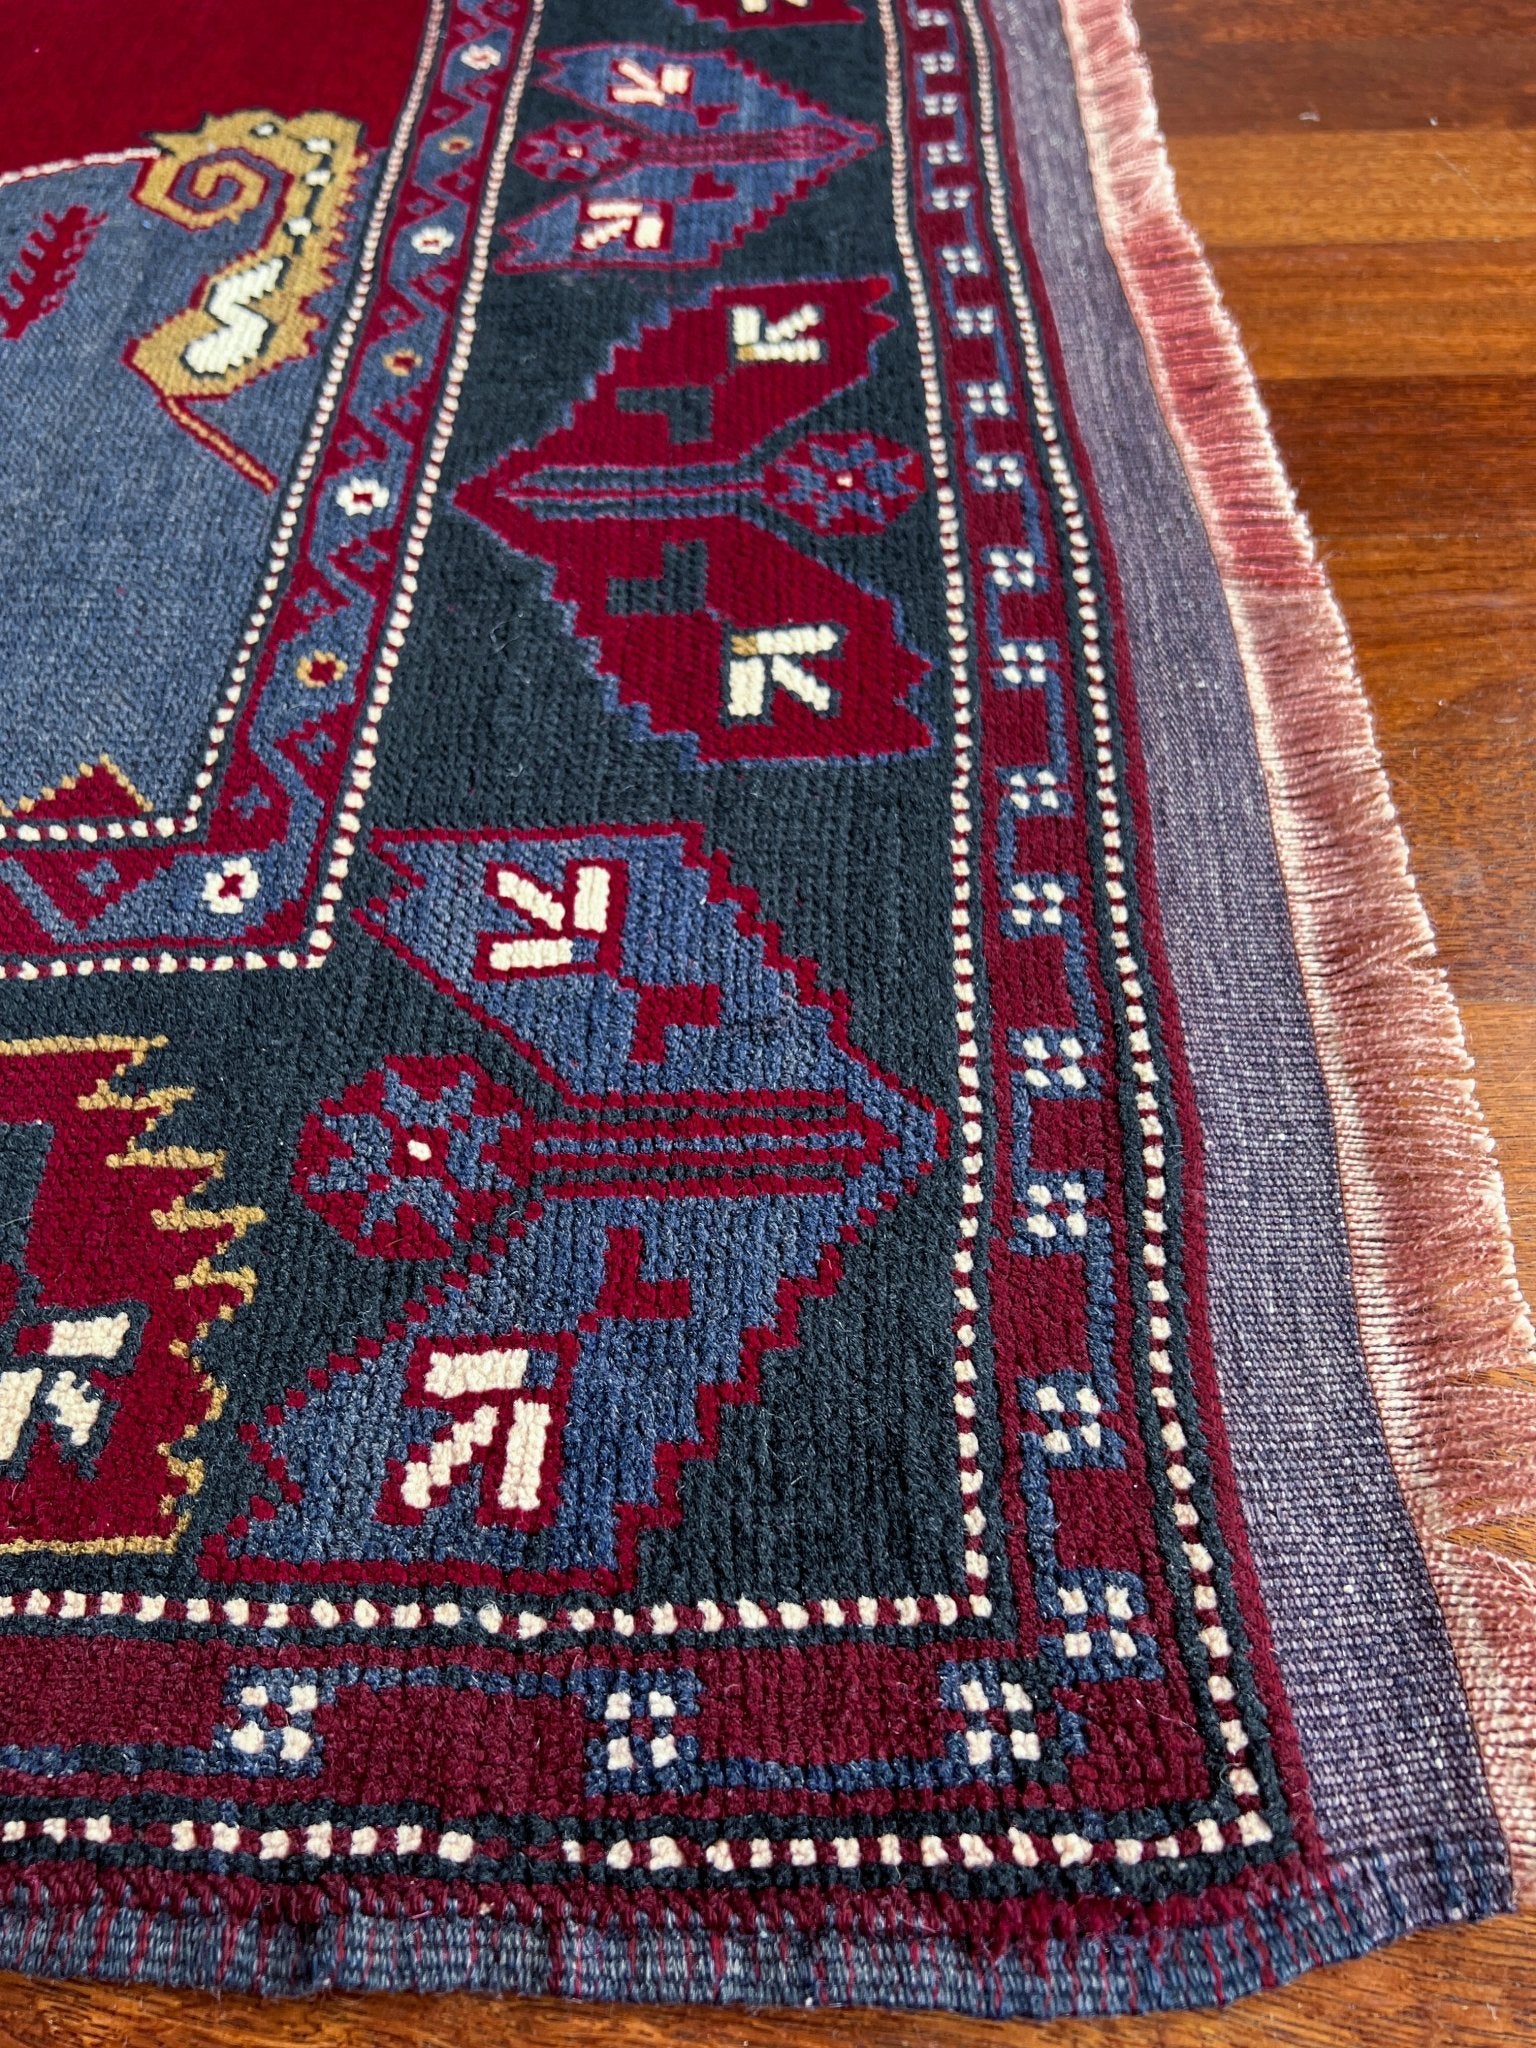 Pergamum antique turkish rug shop san francisco bay area oriental rug berkeley buy rug online california ca canada ontario